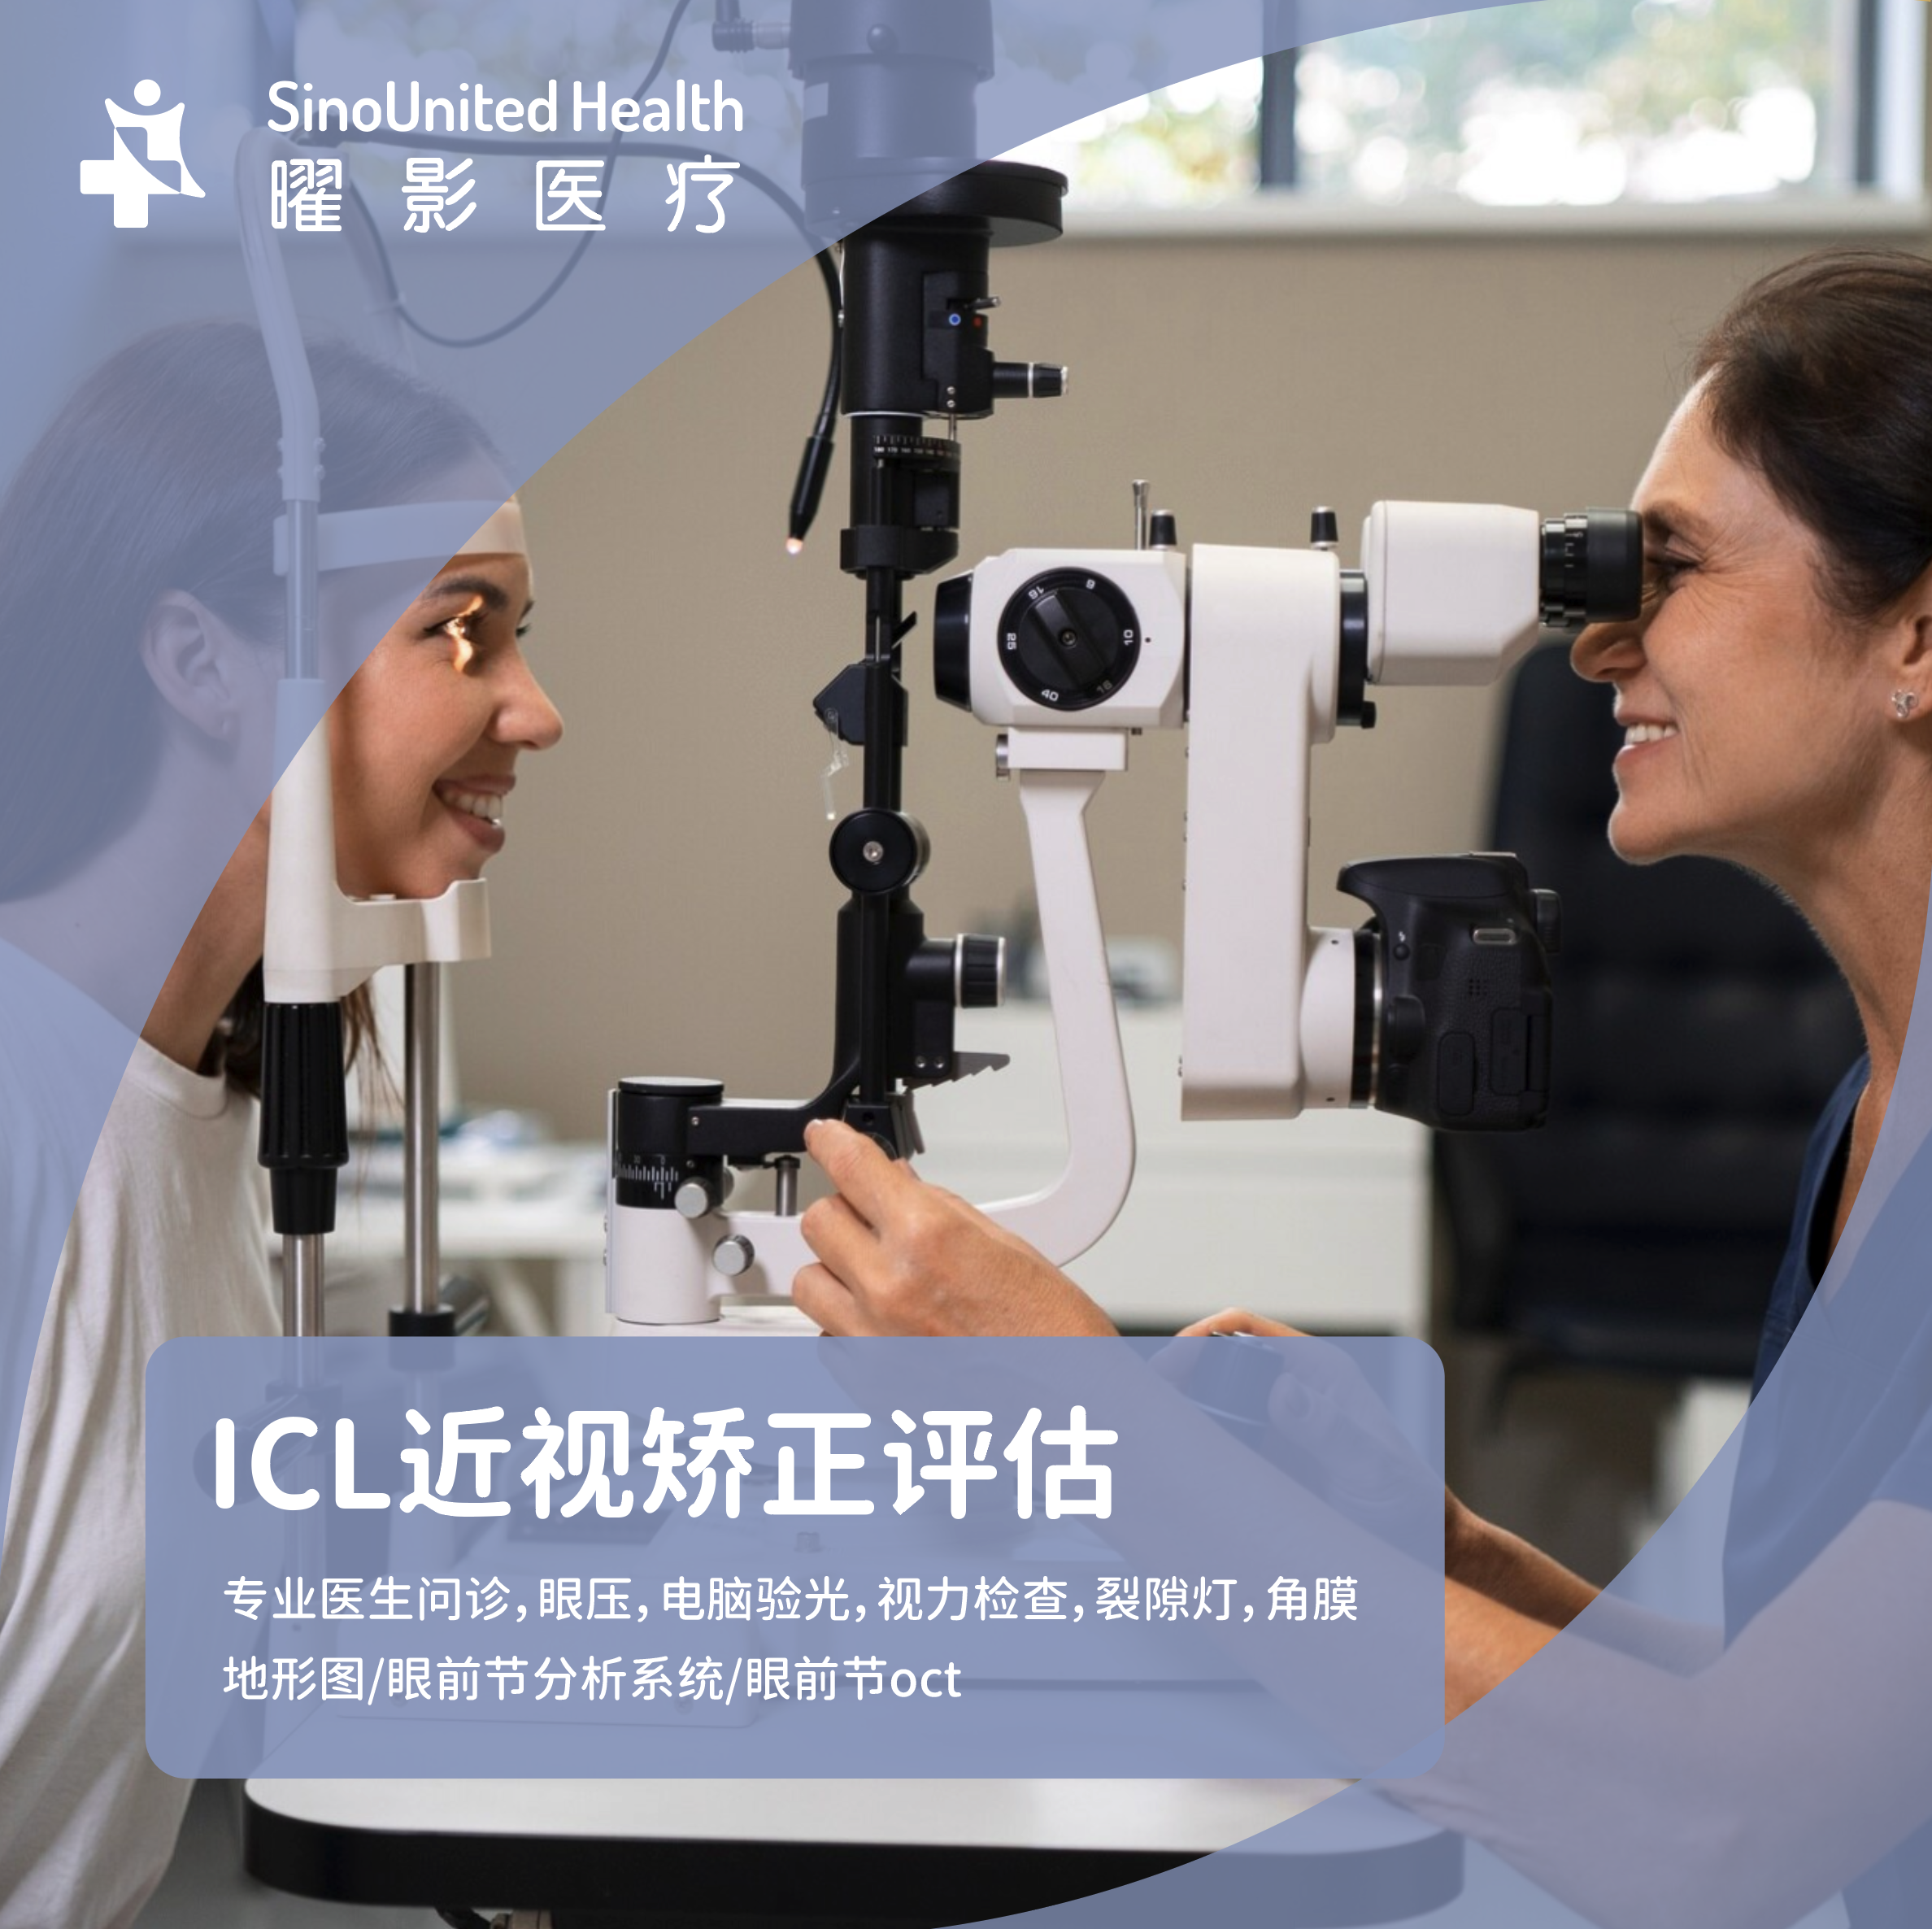 ICL（可植入式眼内接触镜）近视矫正评估套餐